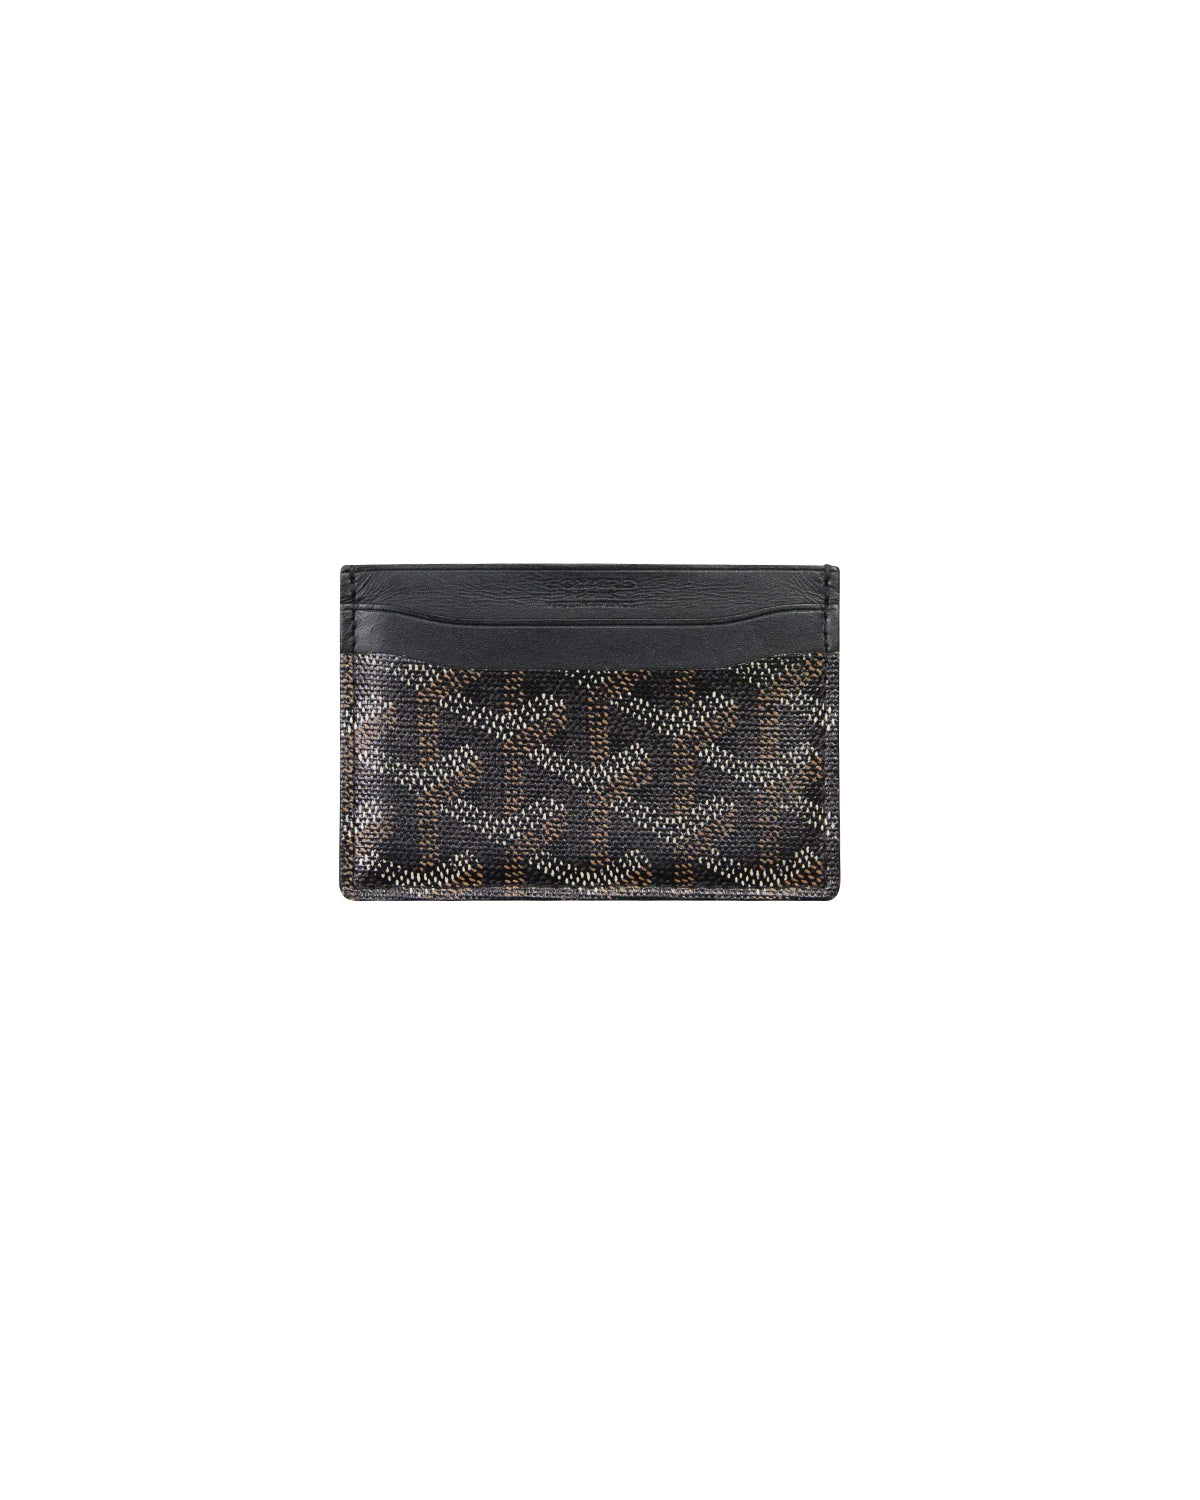 Saint sulpice cloth card wallet Goyard Black in Cloth - 18828782